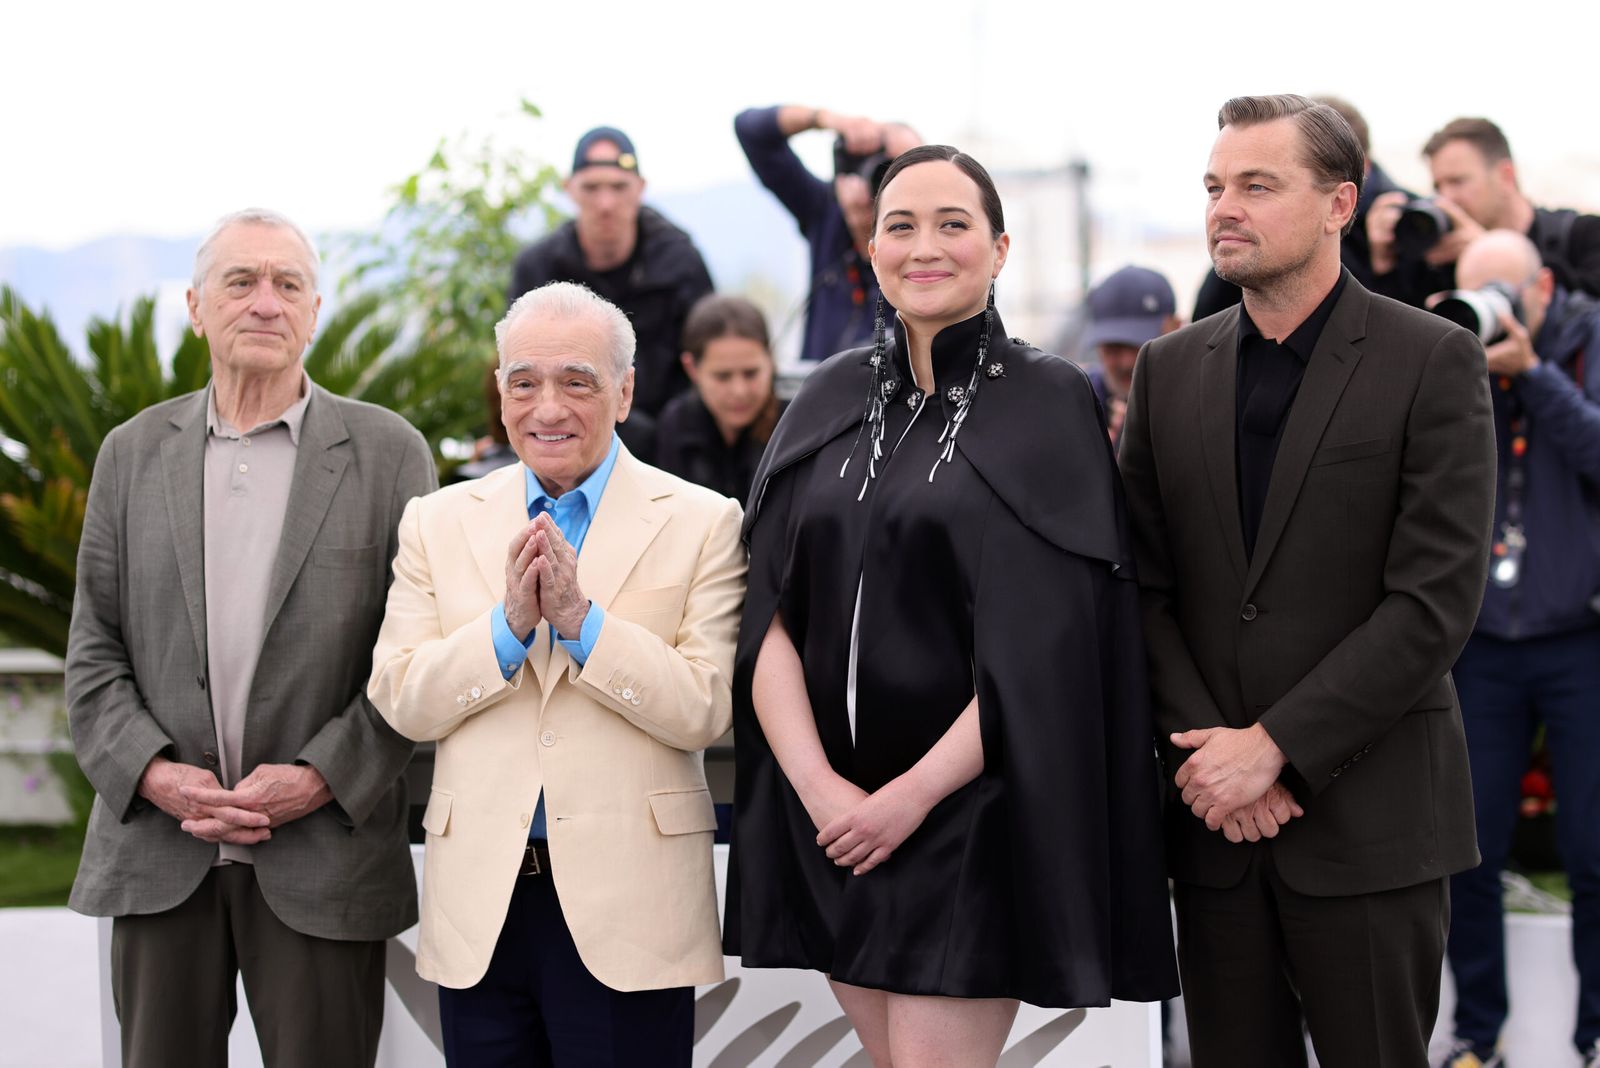 Robert De Niro, Martin Scorsese, Lily Gladstone & Leonardo DiCaprio